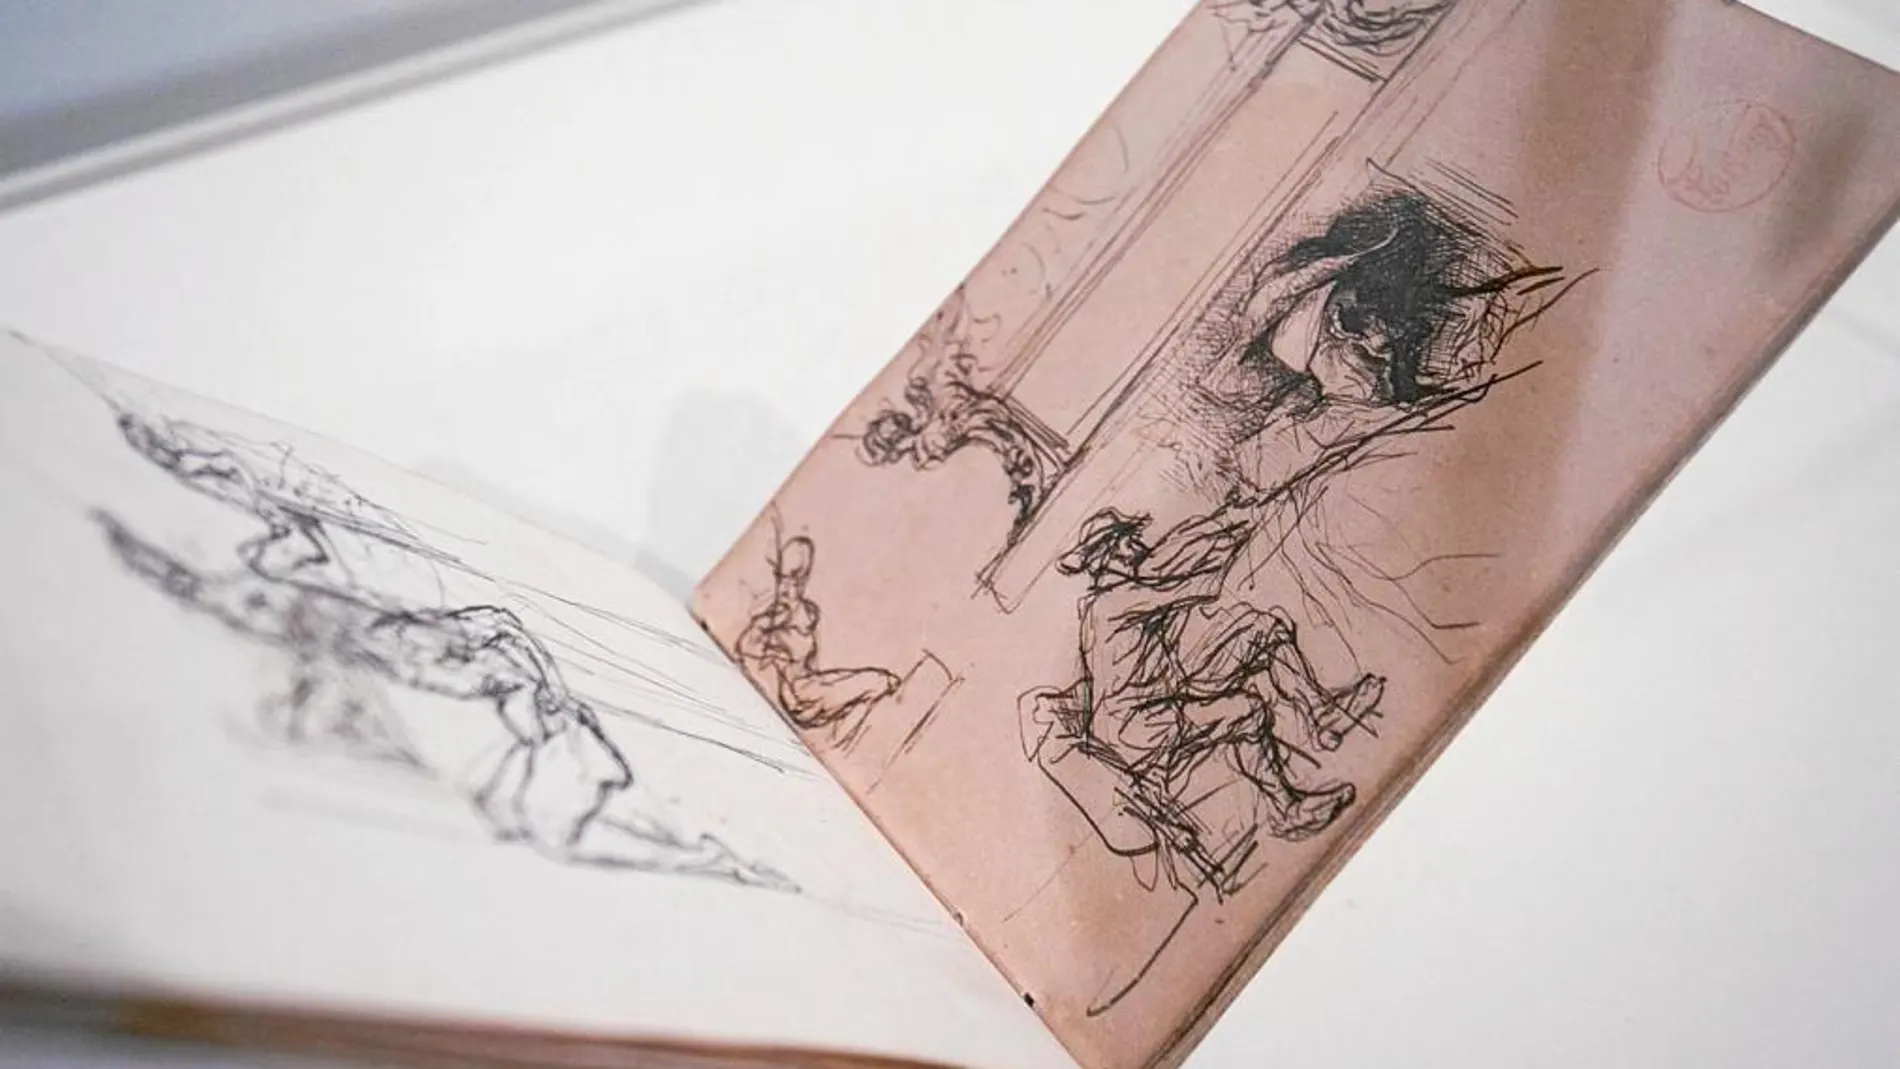 Uno de los cuadernos de Marià Fortuny expuestos en el Mnac, en el que aparece el estudio preparatorio del grabado de la izquierda